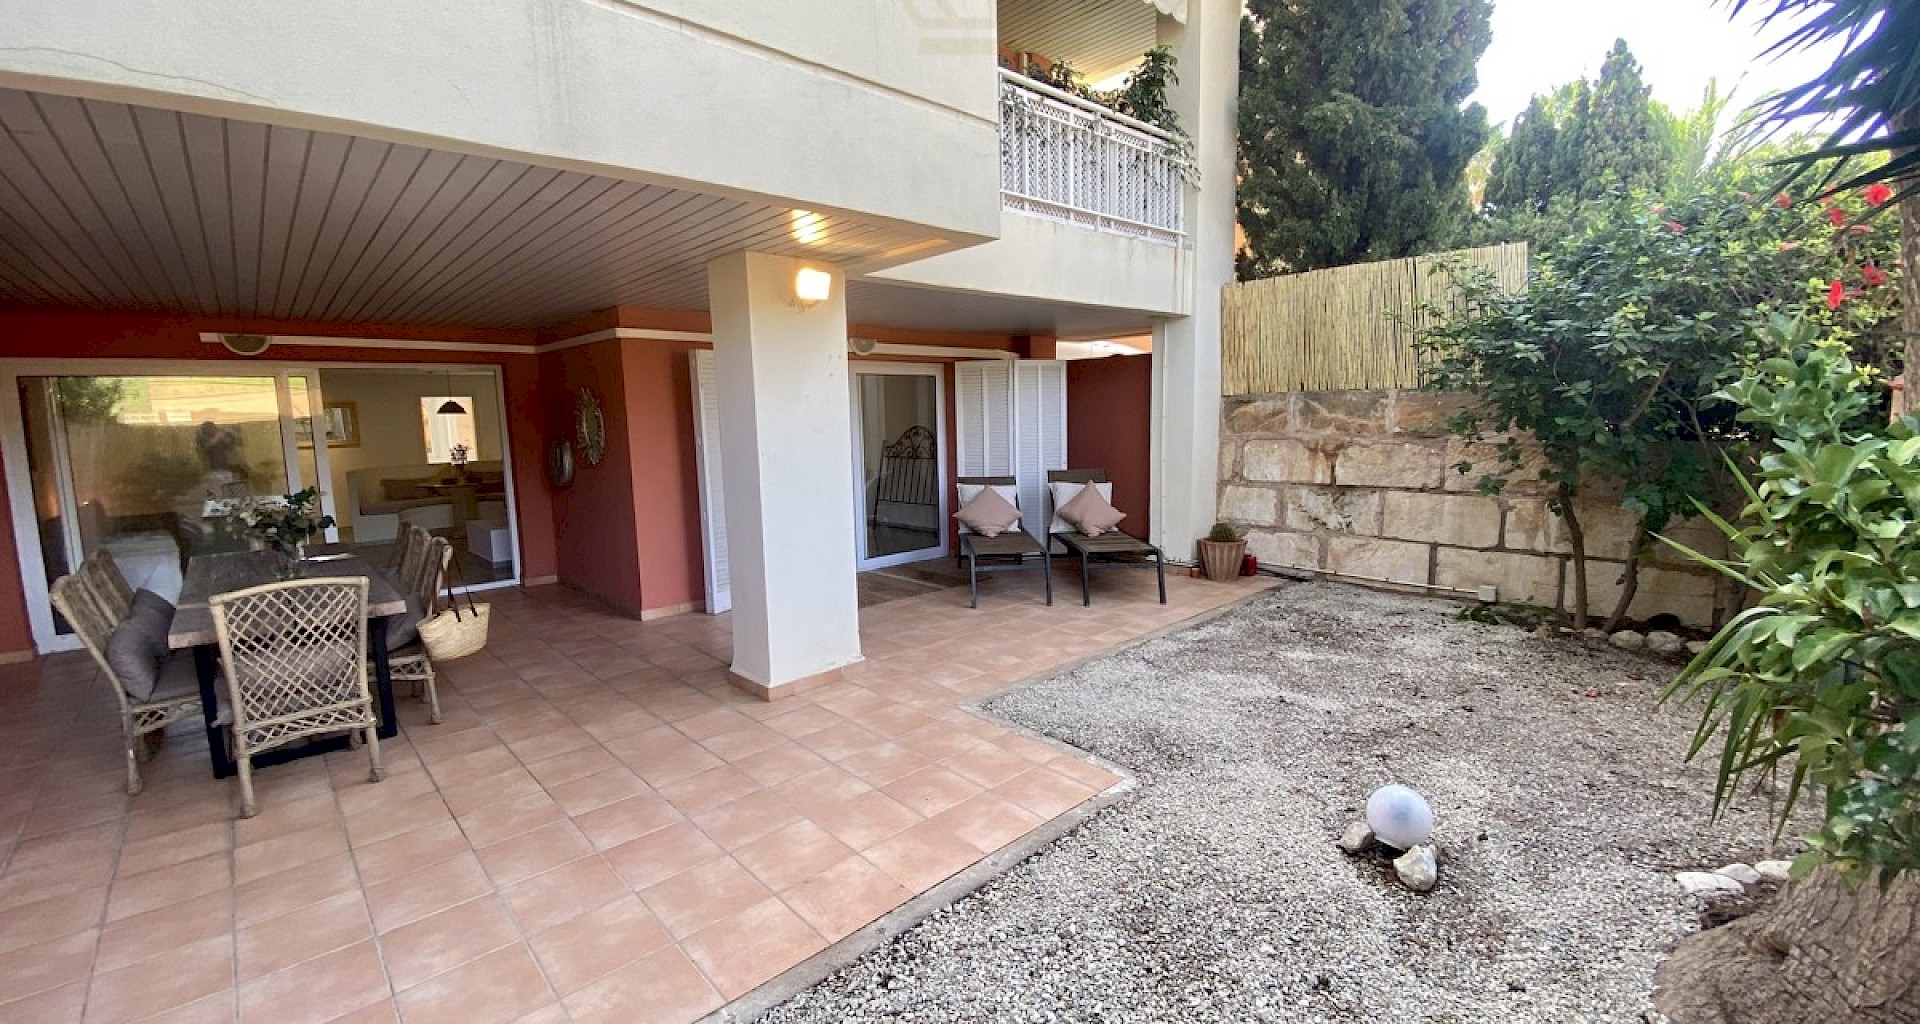 KROHN & LUEDEMANN Spacious well-kept garden apartment in Bendinat near golf course for sale IMG_7146